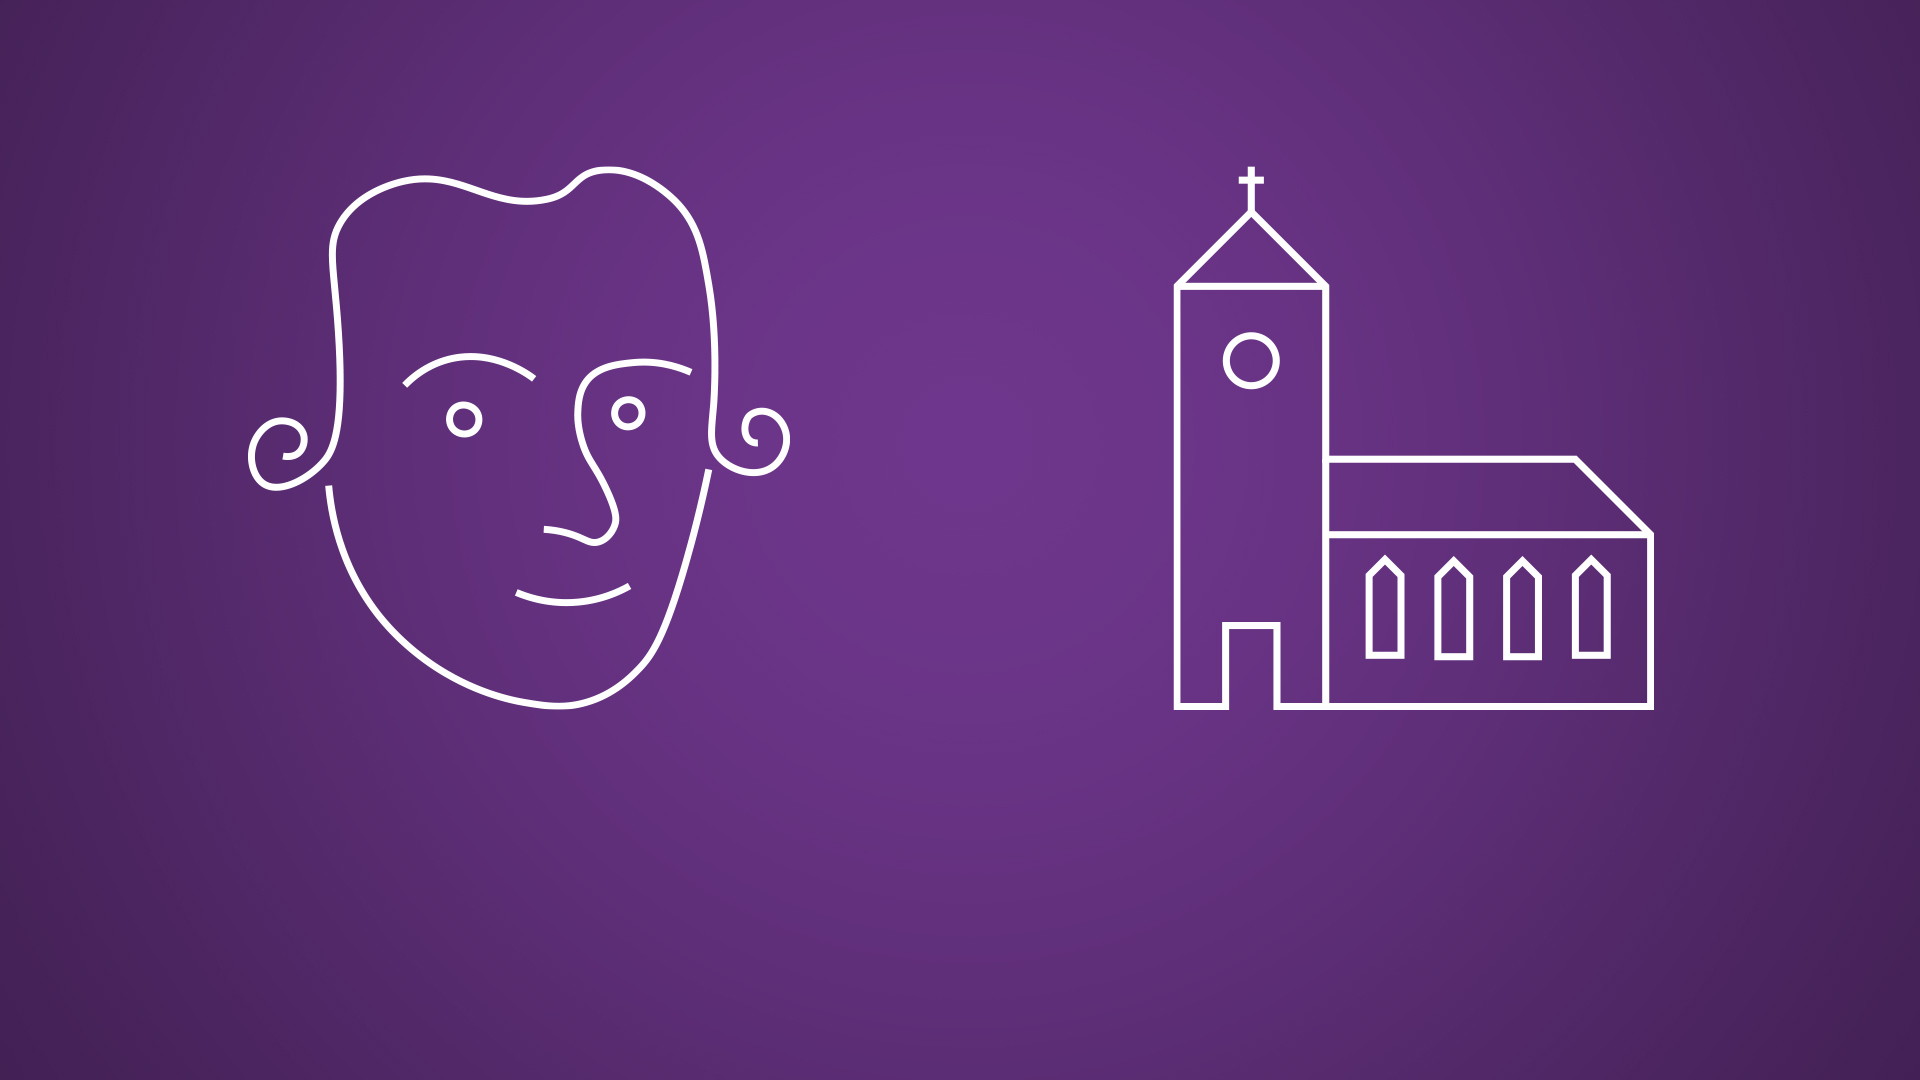 Weiße Strich-Zeichnungen von Immanuel Kant und einer Kirche auf violettem Hintergrund.